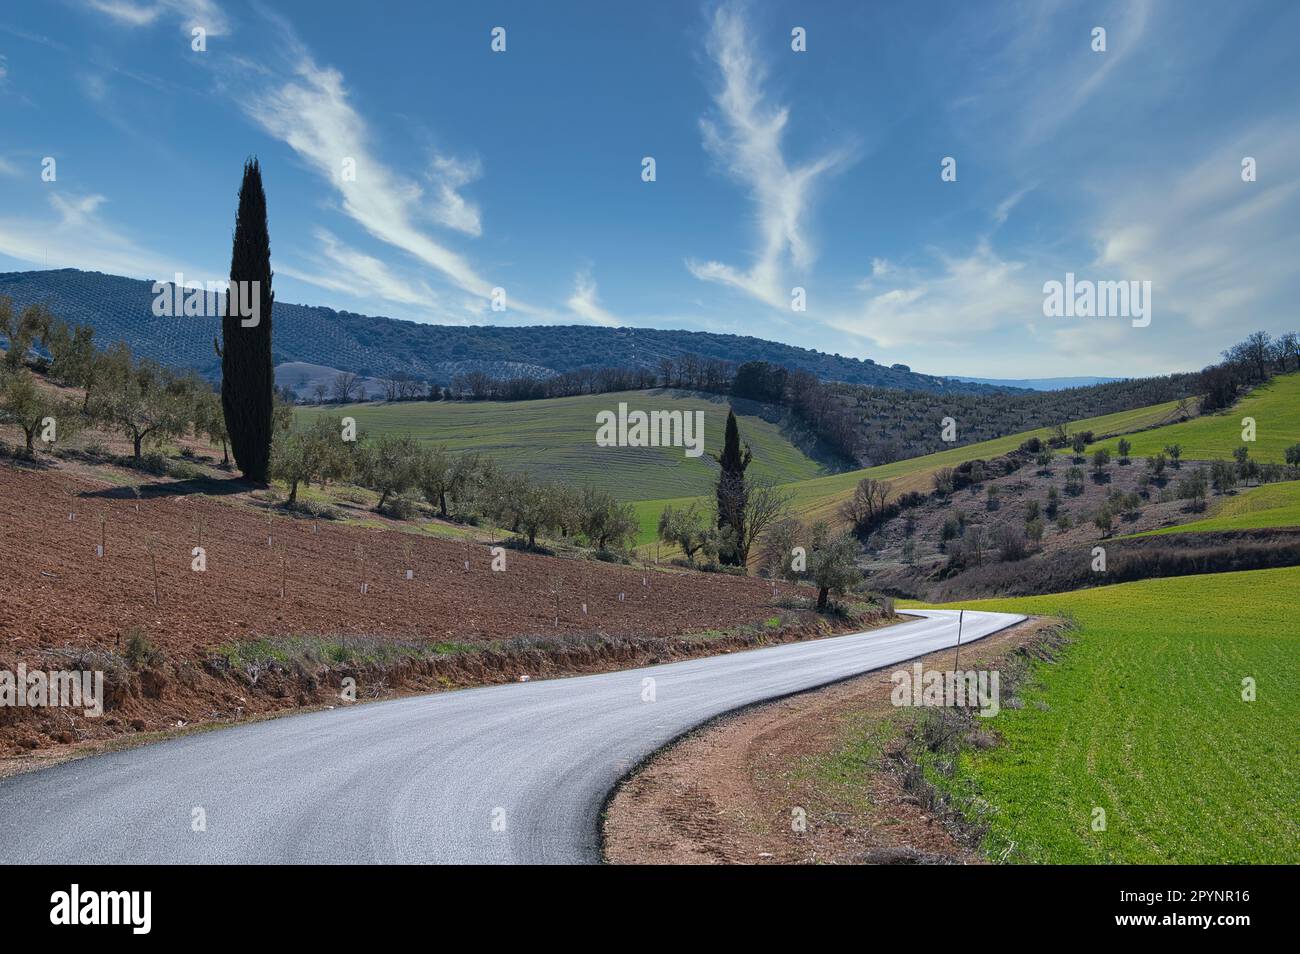 Paysage agricole andalou : grandes superficies de céréales, oliviers et amandiers entre collines et montagnes Banque D'Images